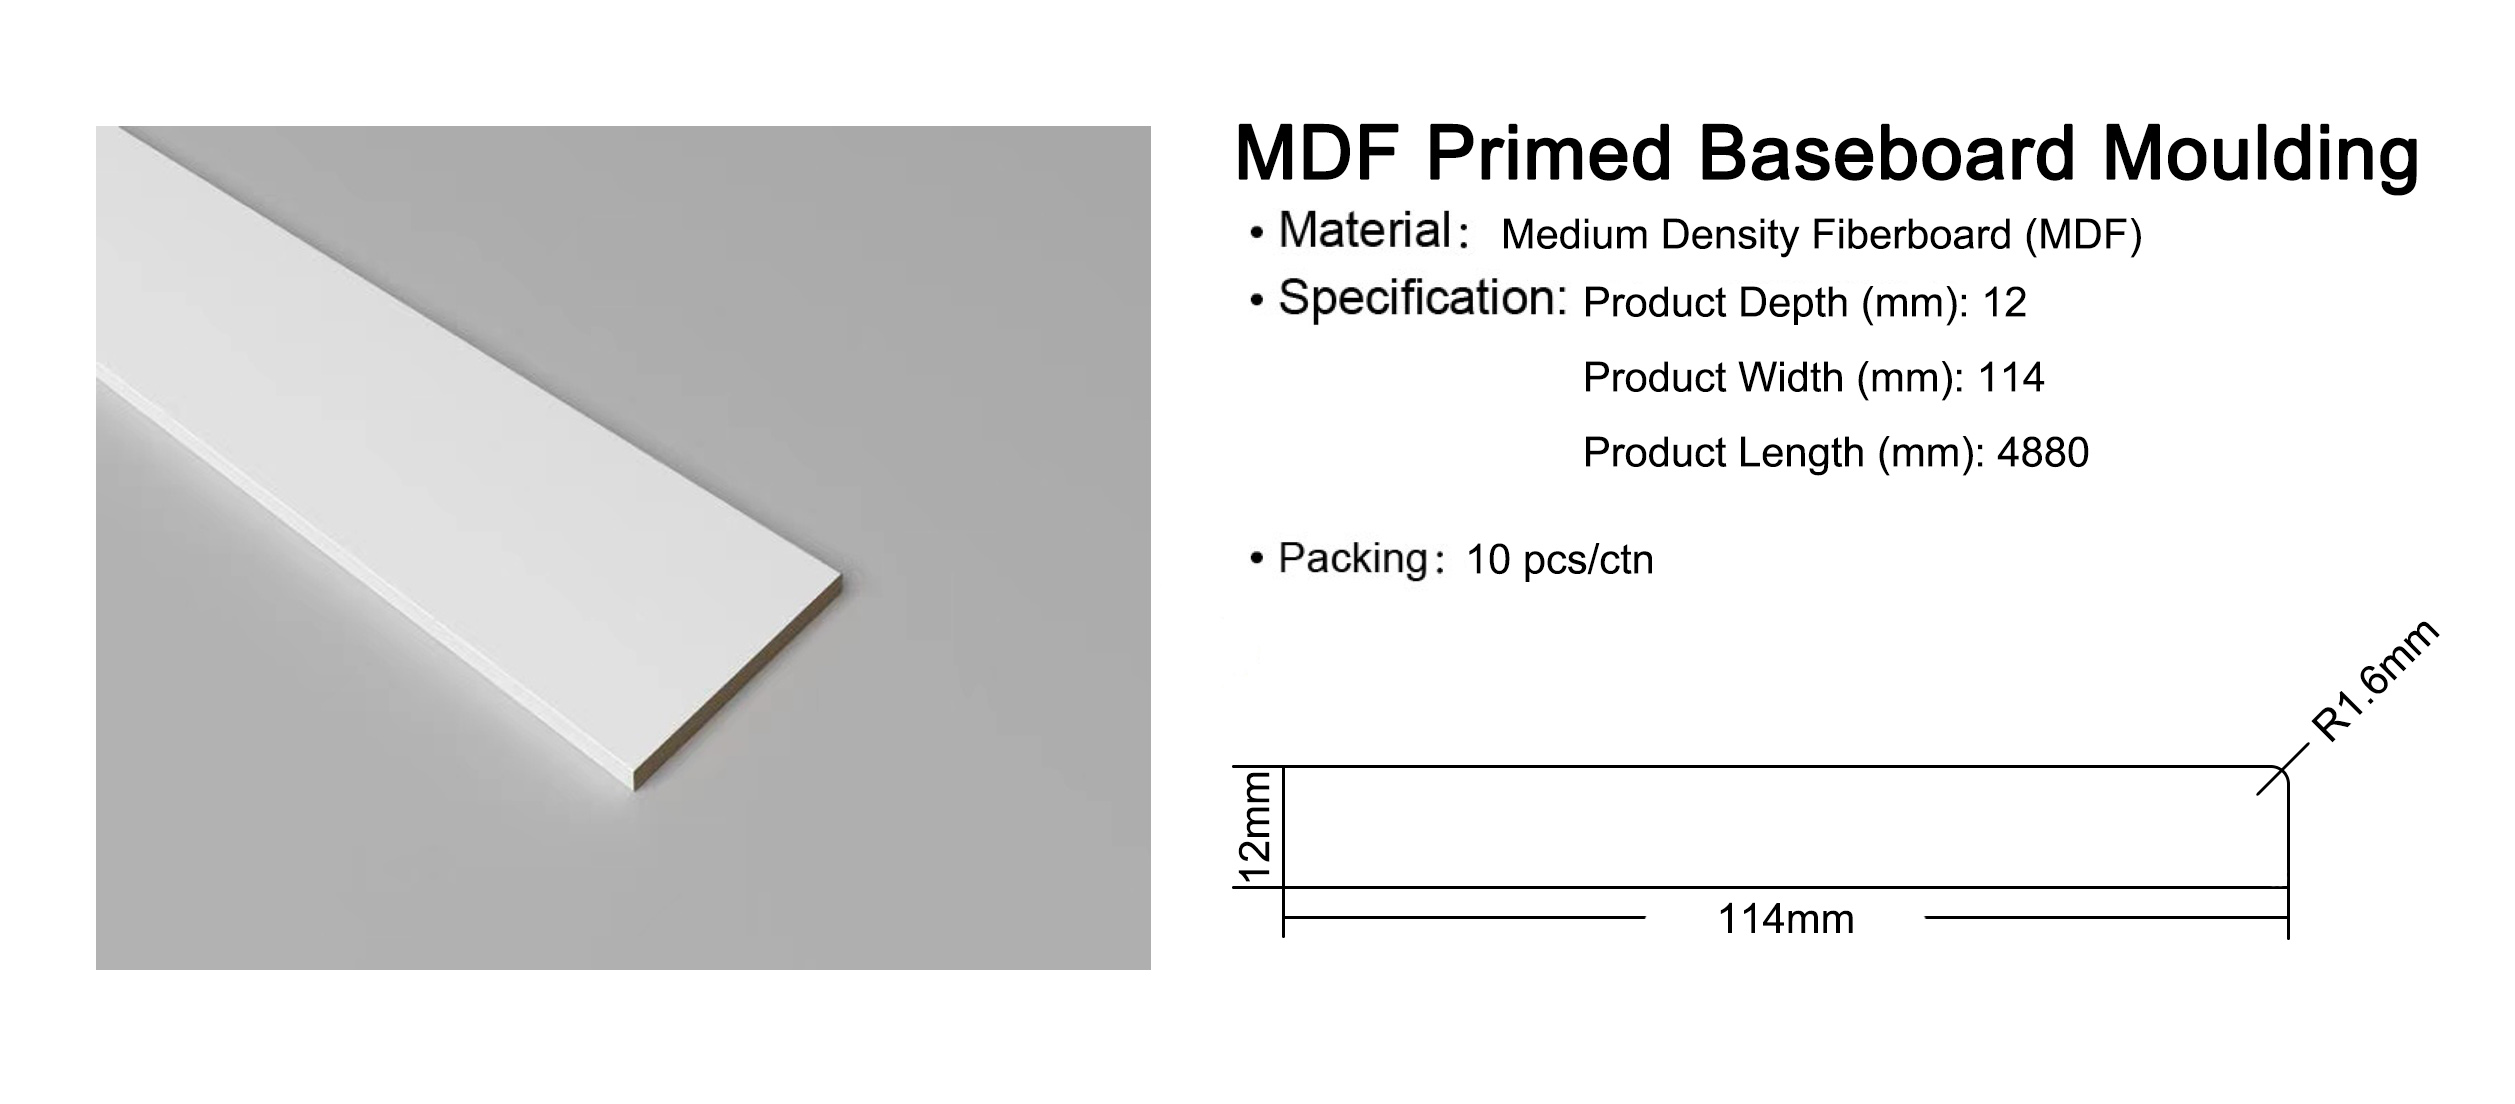 MDF Primed Baseboard Moulding